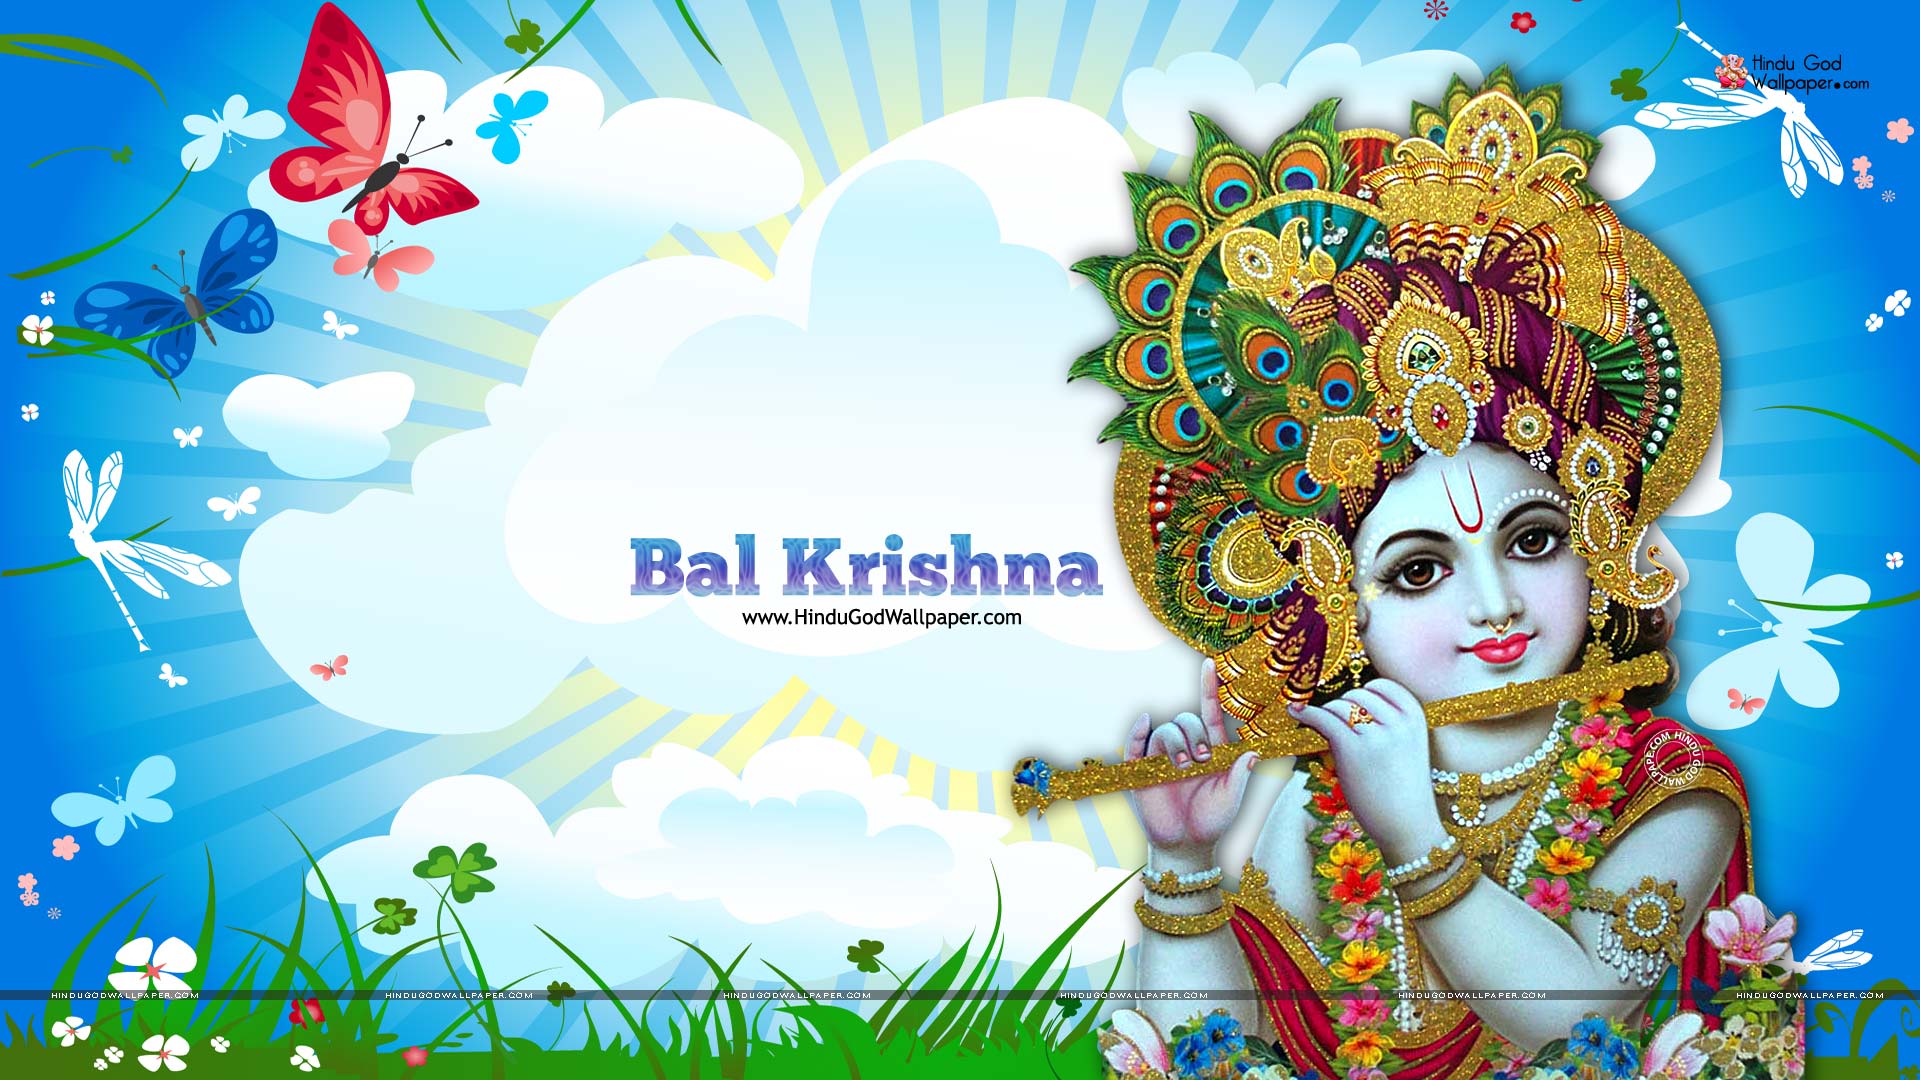 bal krishna wallpaper hd